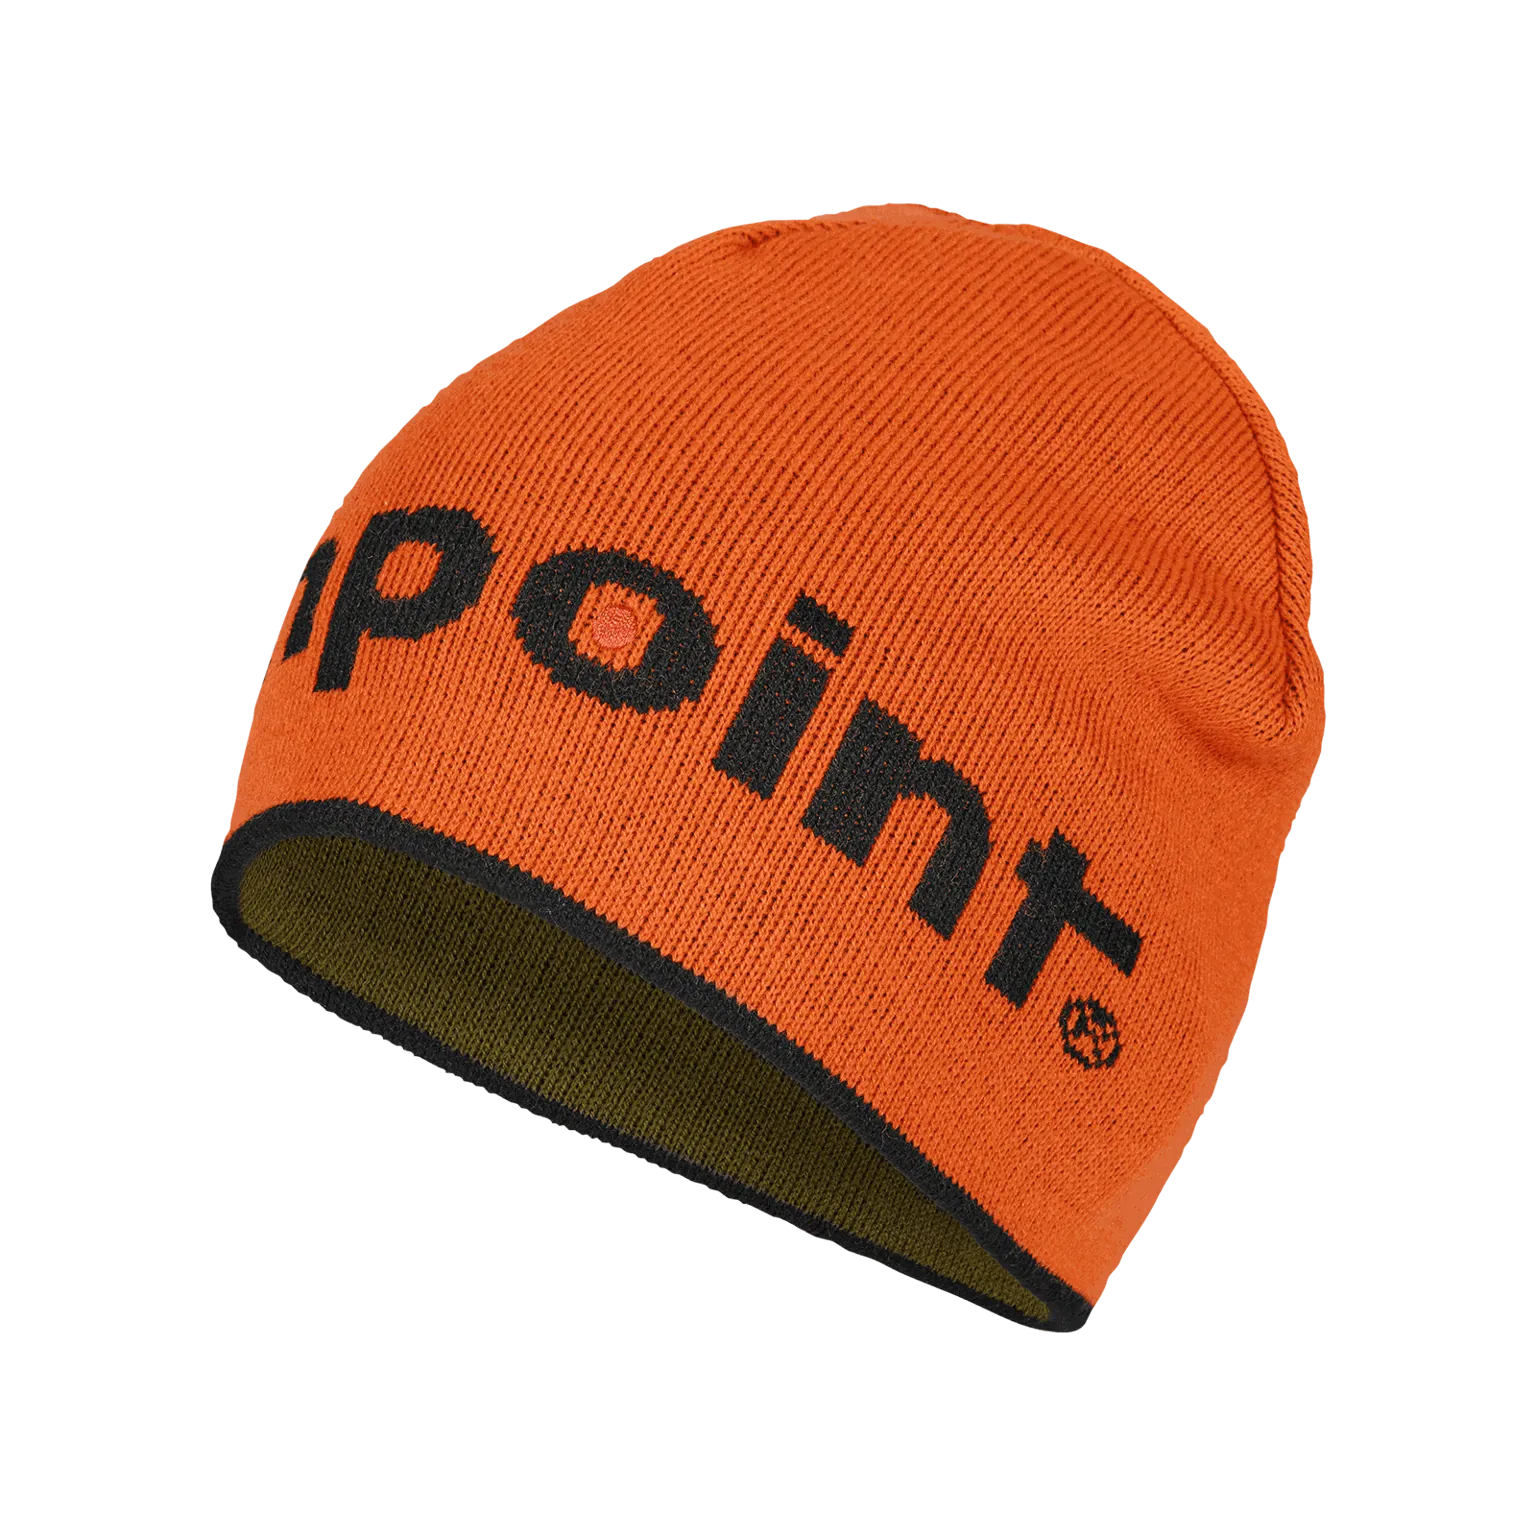 Berretto Aimpoint® - in maglia Cappello caldo reversibile arancione e verde  - 1